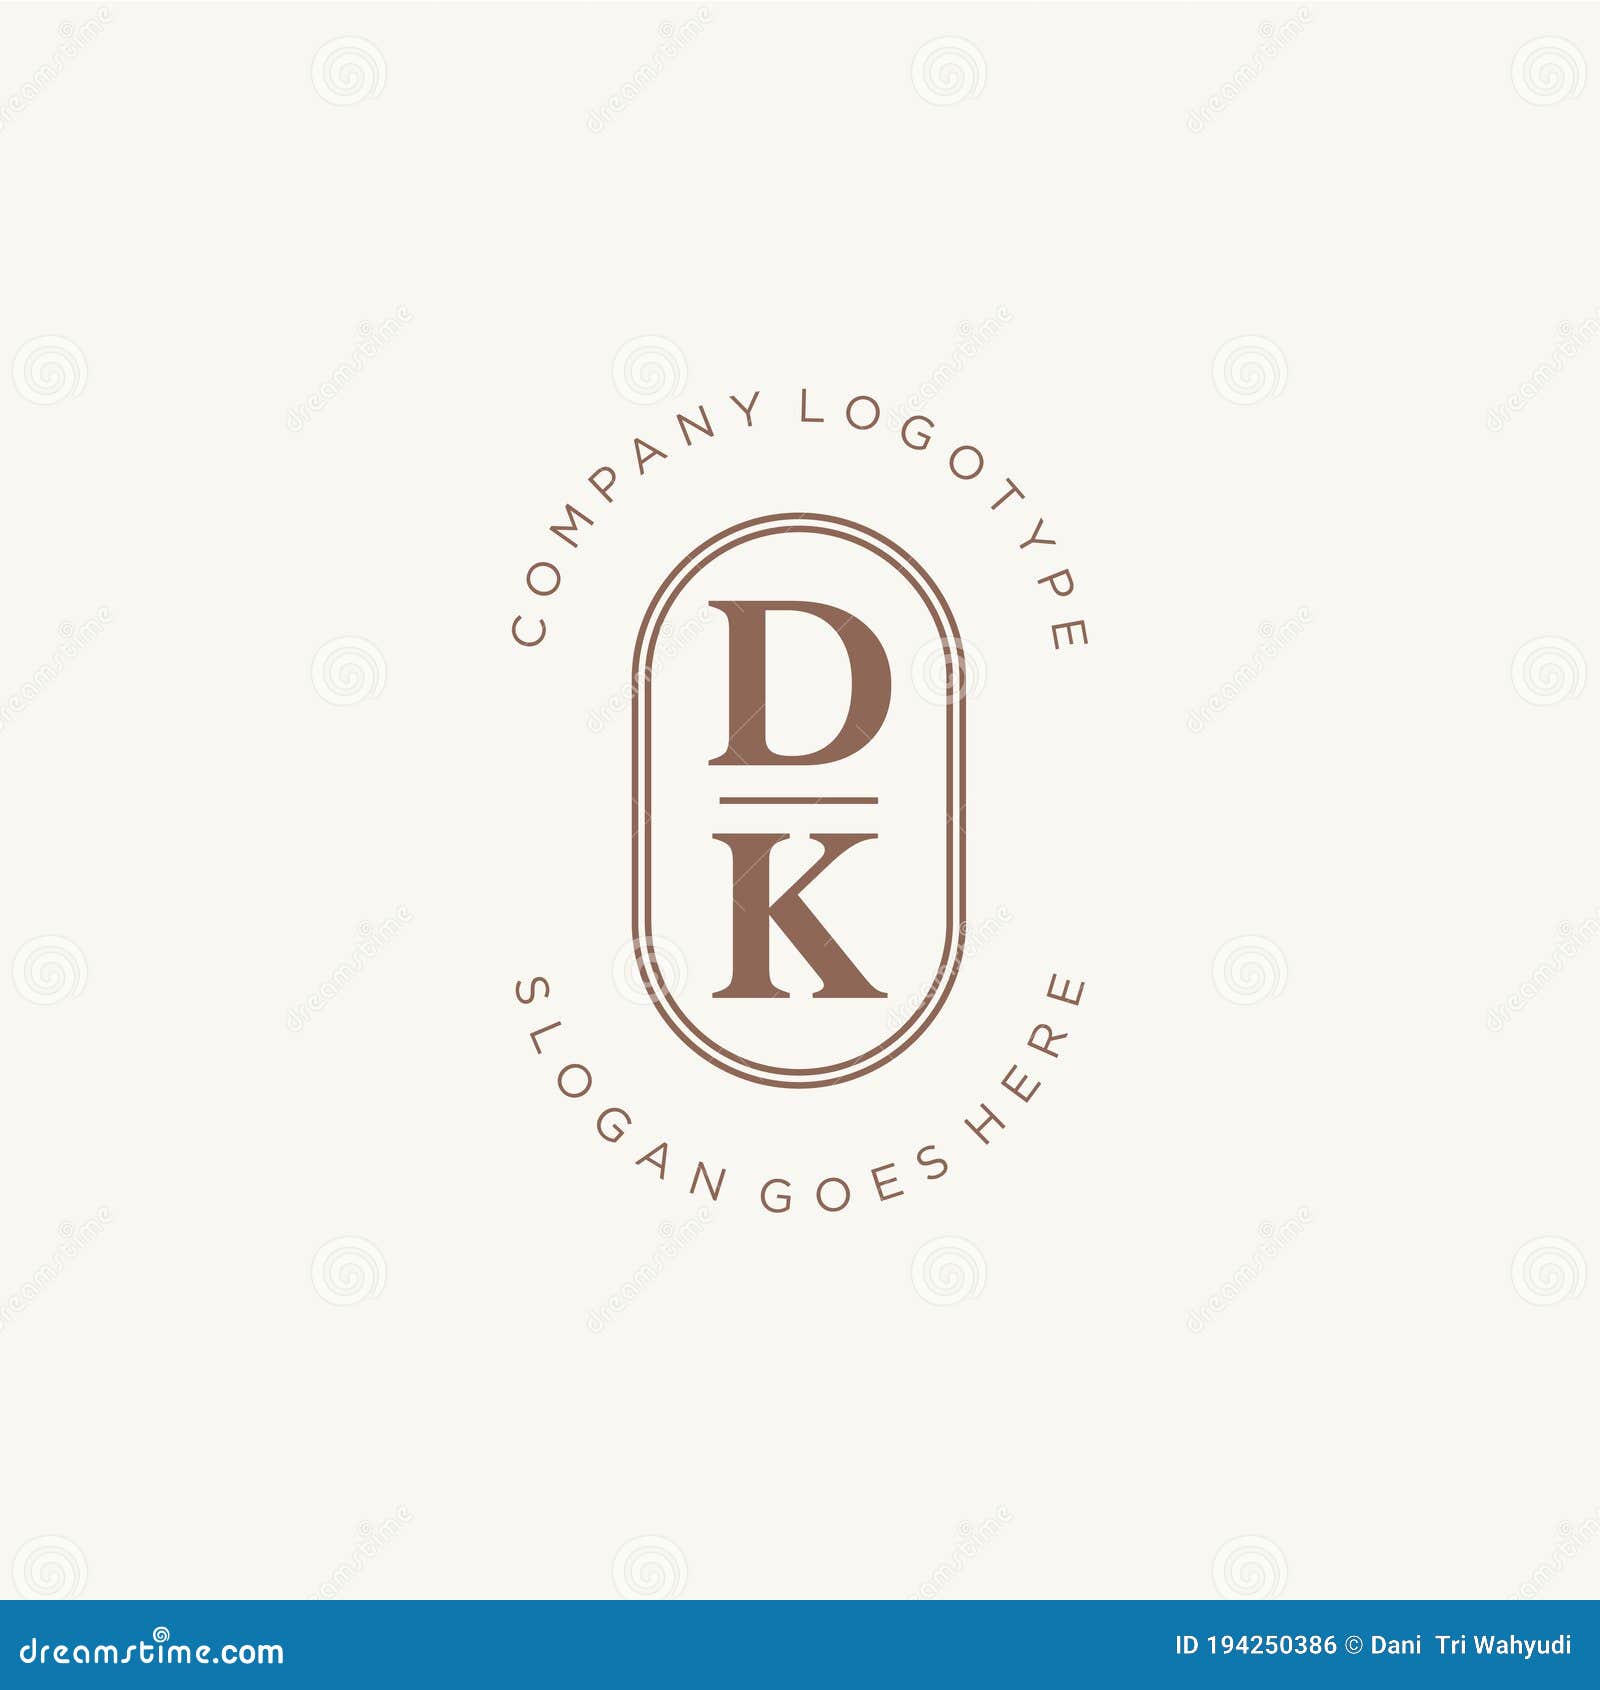 logo #DK_studio । DK studio logo - YouTube